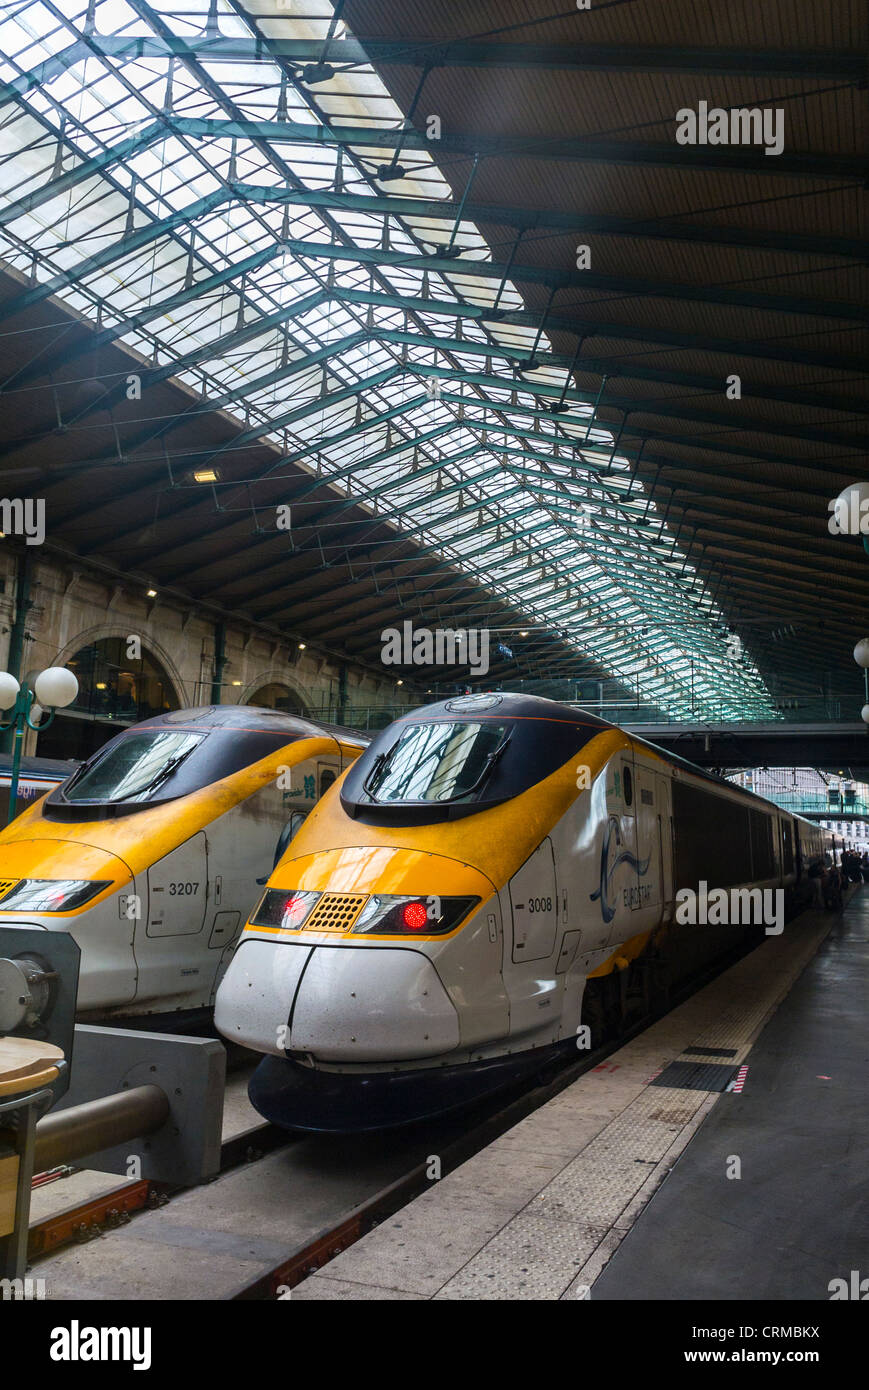 Parigi, Francia, Eurostar, T.G.V. Treno ad alta velocità, per Lon-don nella stazione ferroviaria storica, Gare de Nord, Front, paris Modern Innovation Foto Stock